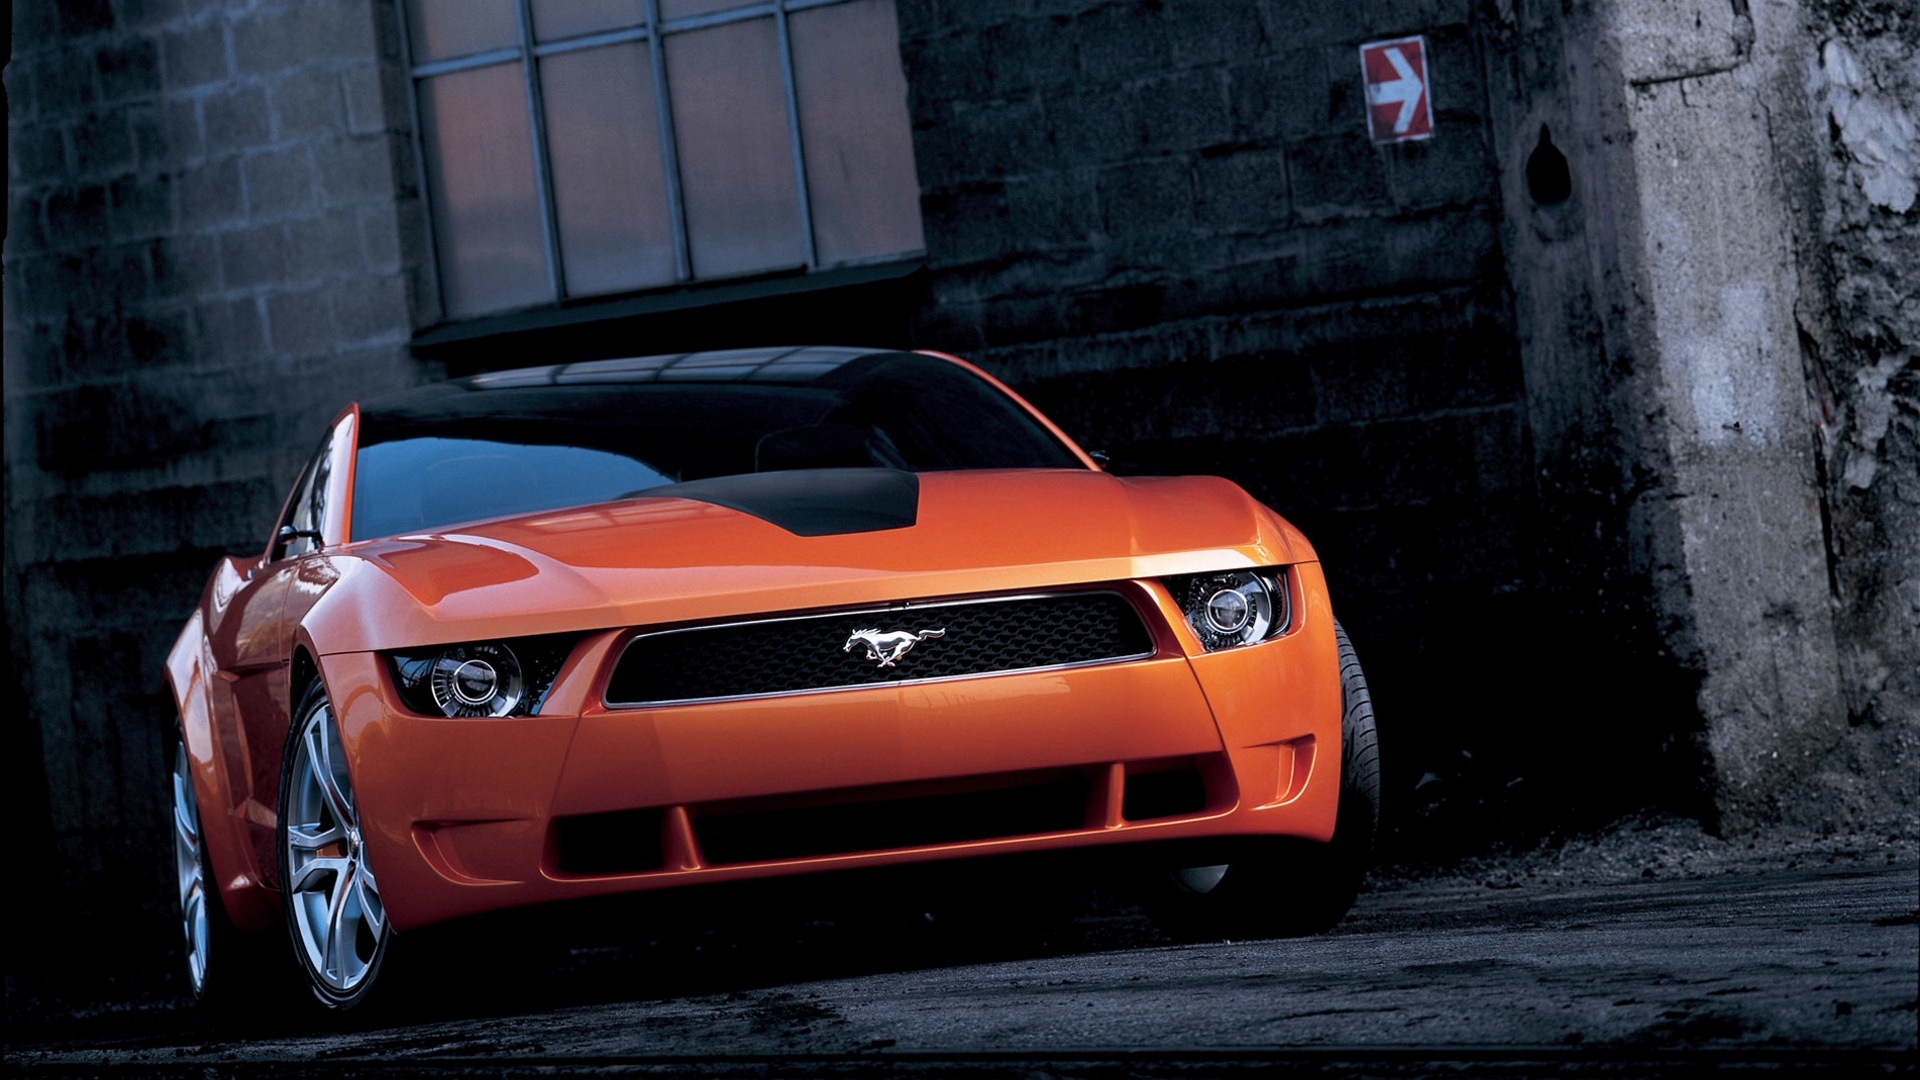 Ford Mustang, красное авто, тюнинг, диски, обои, Red car, tuning, disks, wallpaper